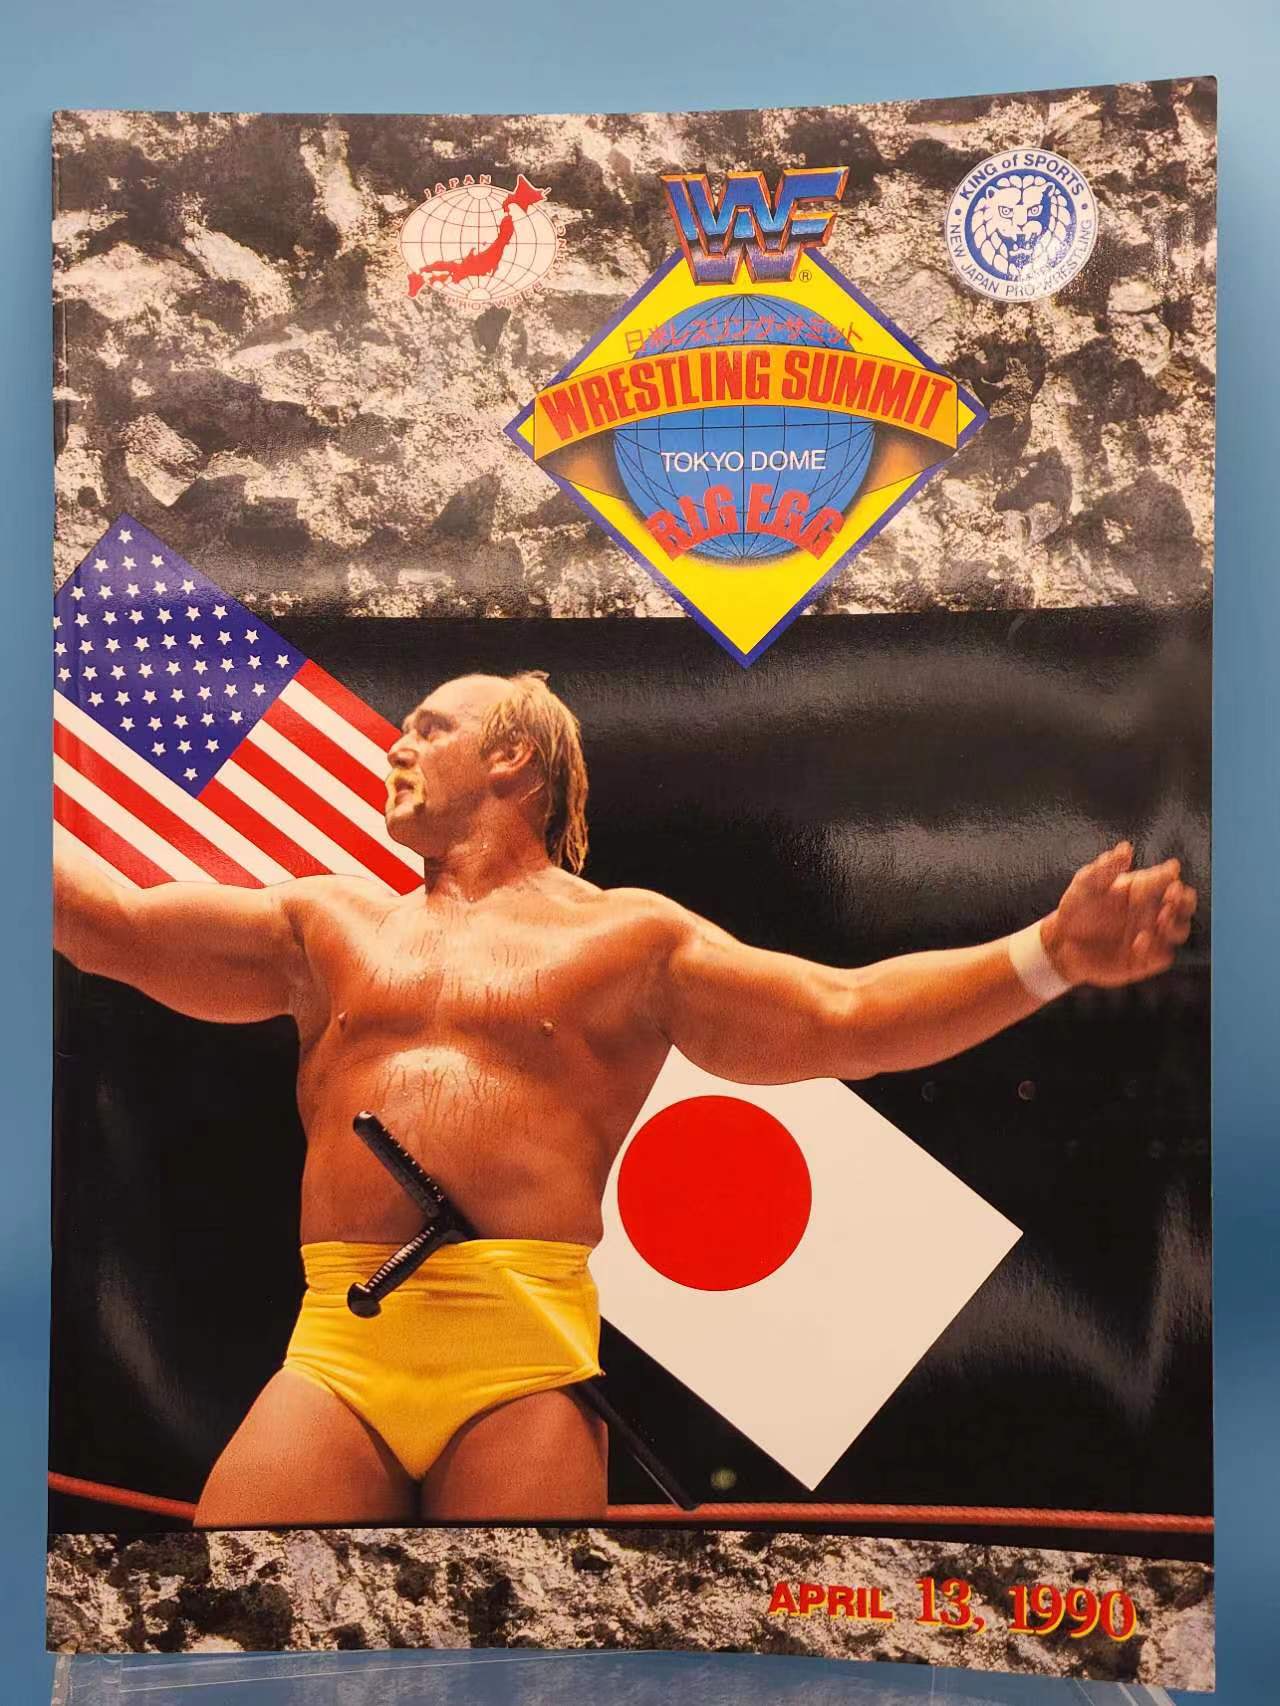 All-Japan vs. New Japan vs. WWF Wrestling Summit 1990 Official Program